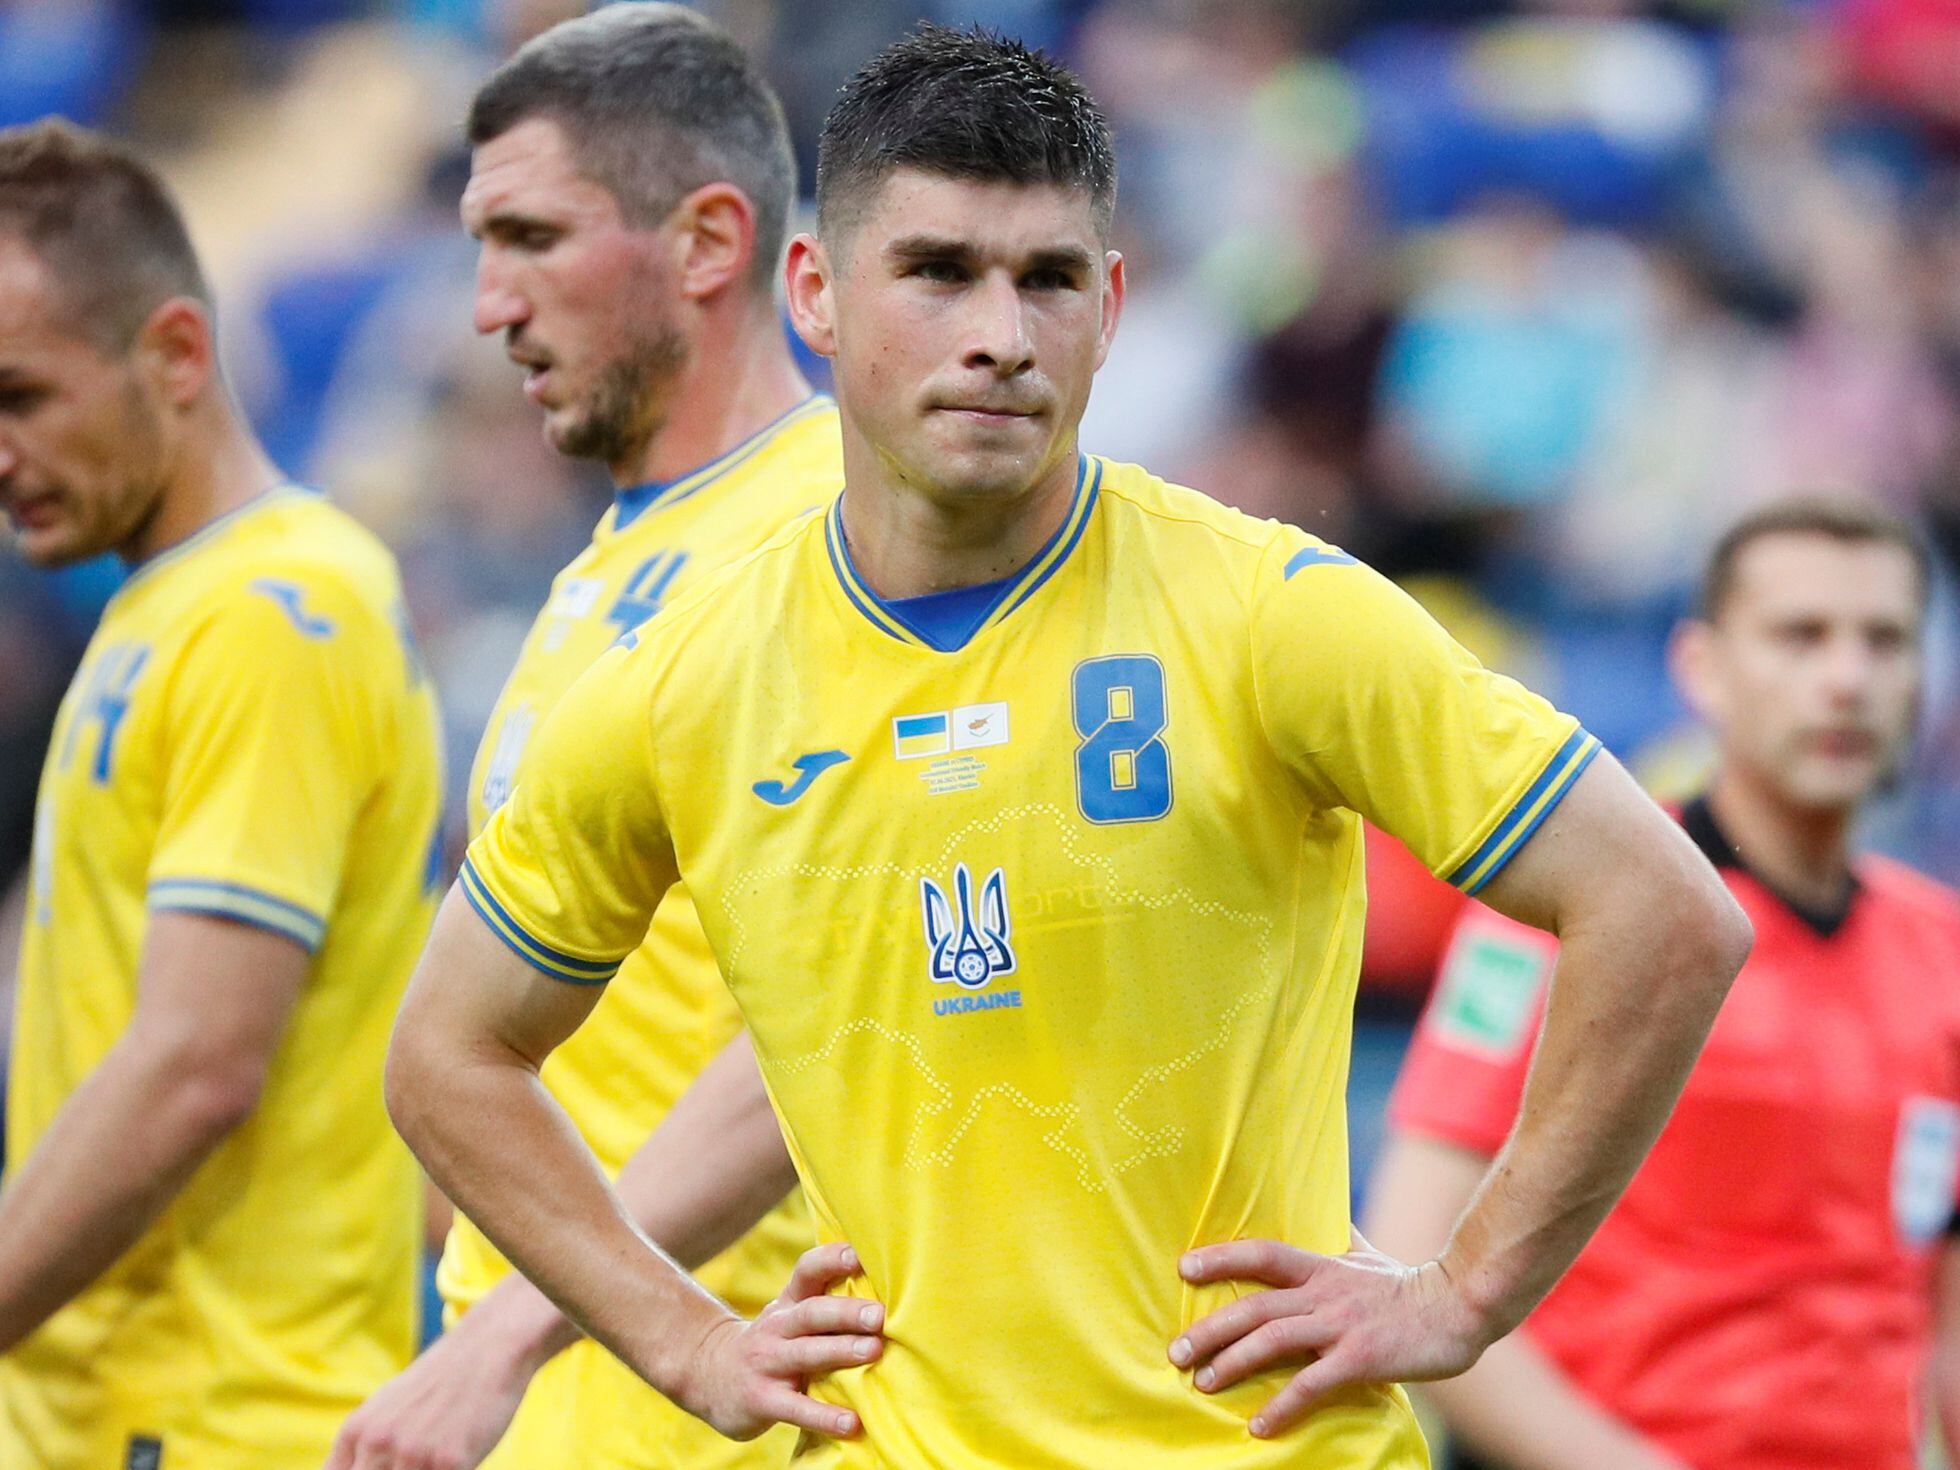 pistón Influencia Brillar Eurocopa 2021: La camiseta de la selección de fútbol de Ucrania que  enfurece a Rusia | Eurocopa de Fútbol 2021 | EL PAÍS